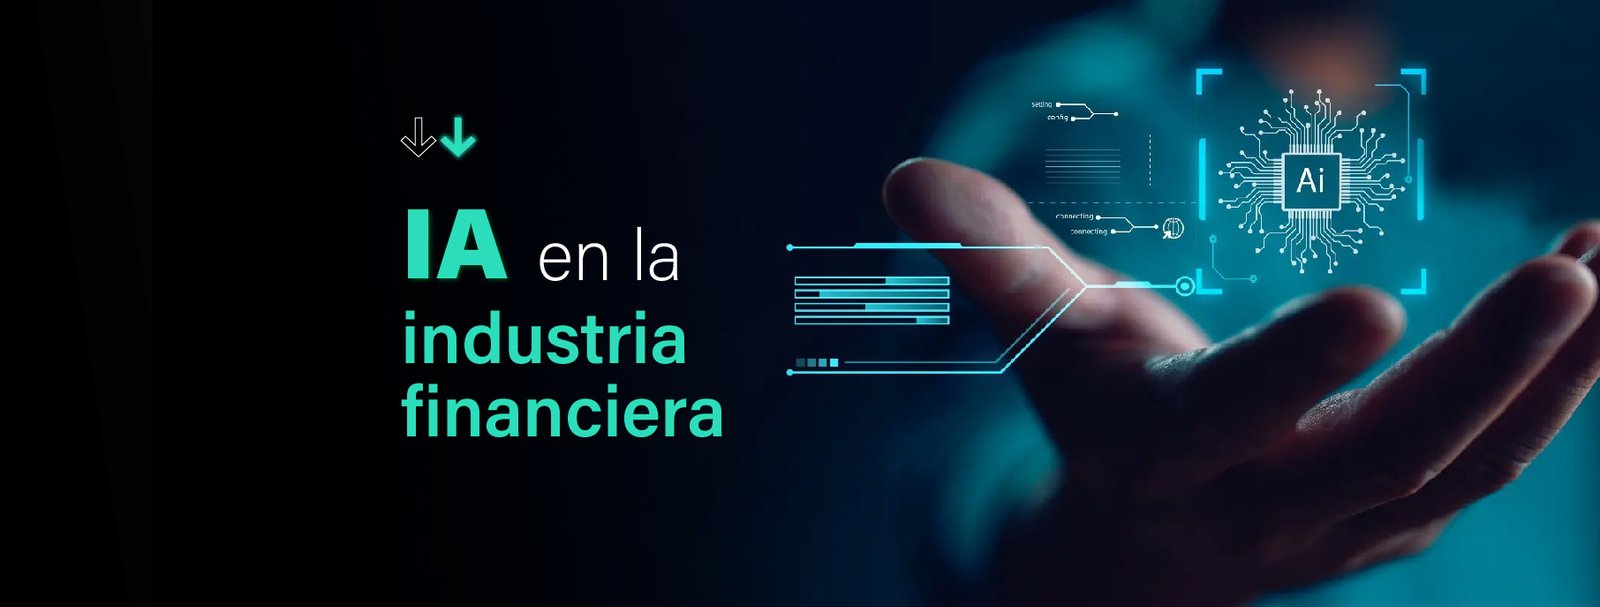 IA en la industria financiera-IT Patagonia